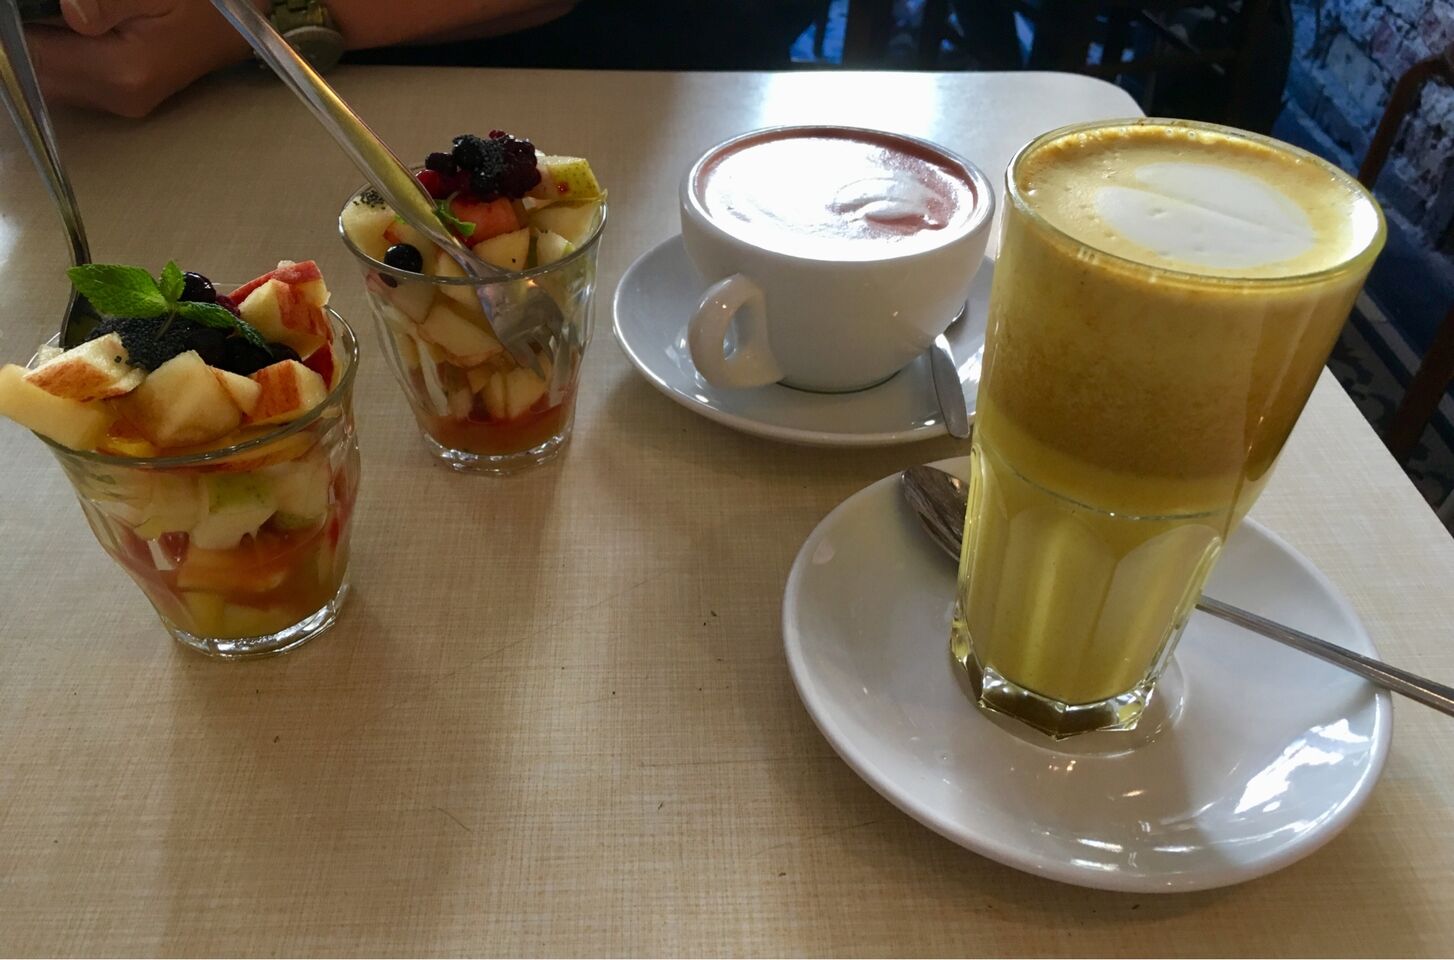 A photo of Café Rotkehlchen 